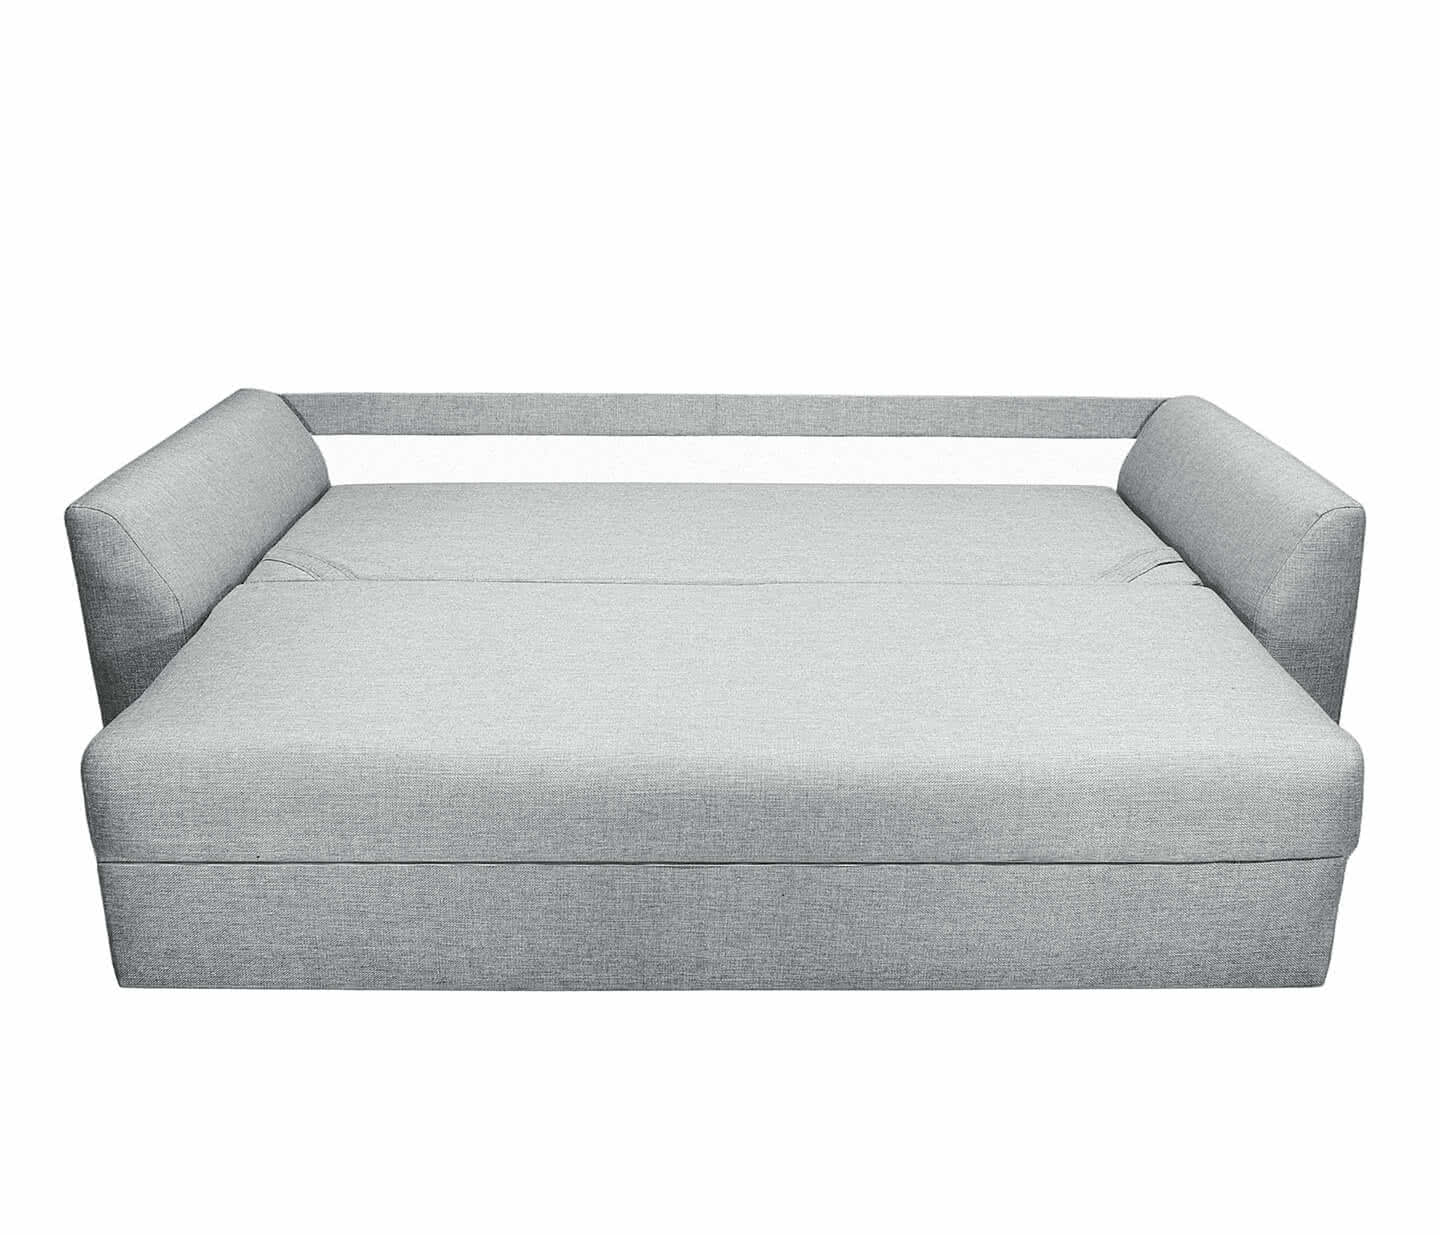 Купить диван FotoDivan Диван Белфест, Серый 150 х 195 см Серый дешево на официальном сайте